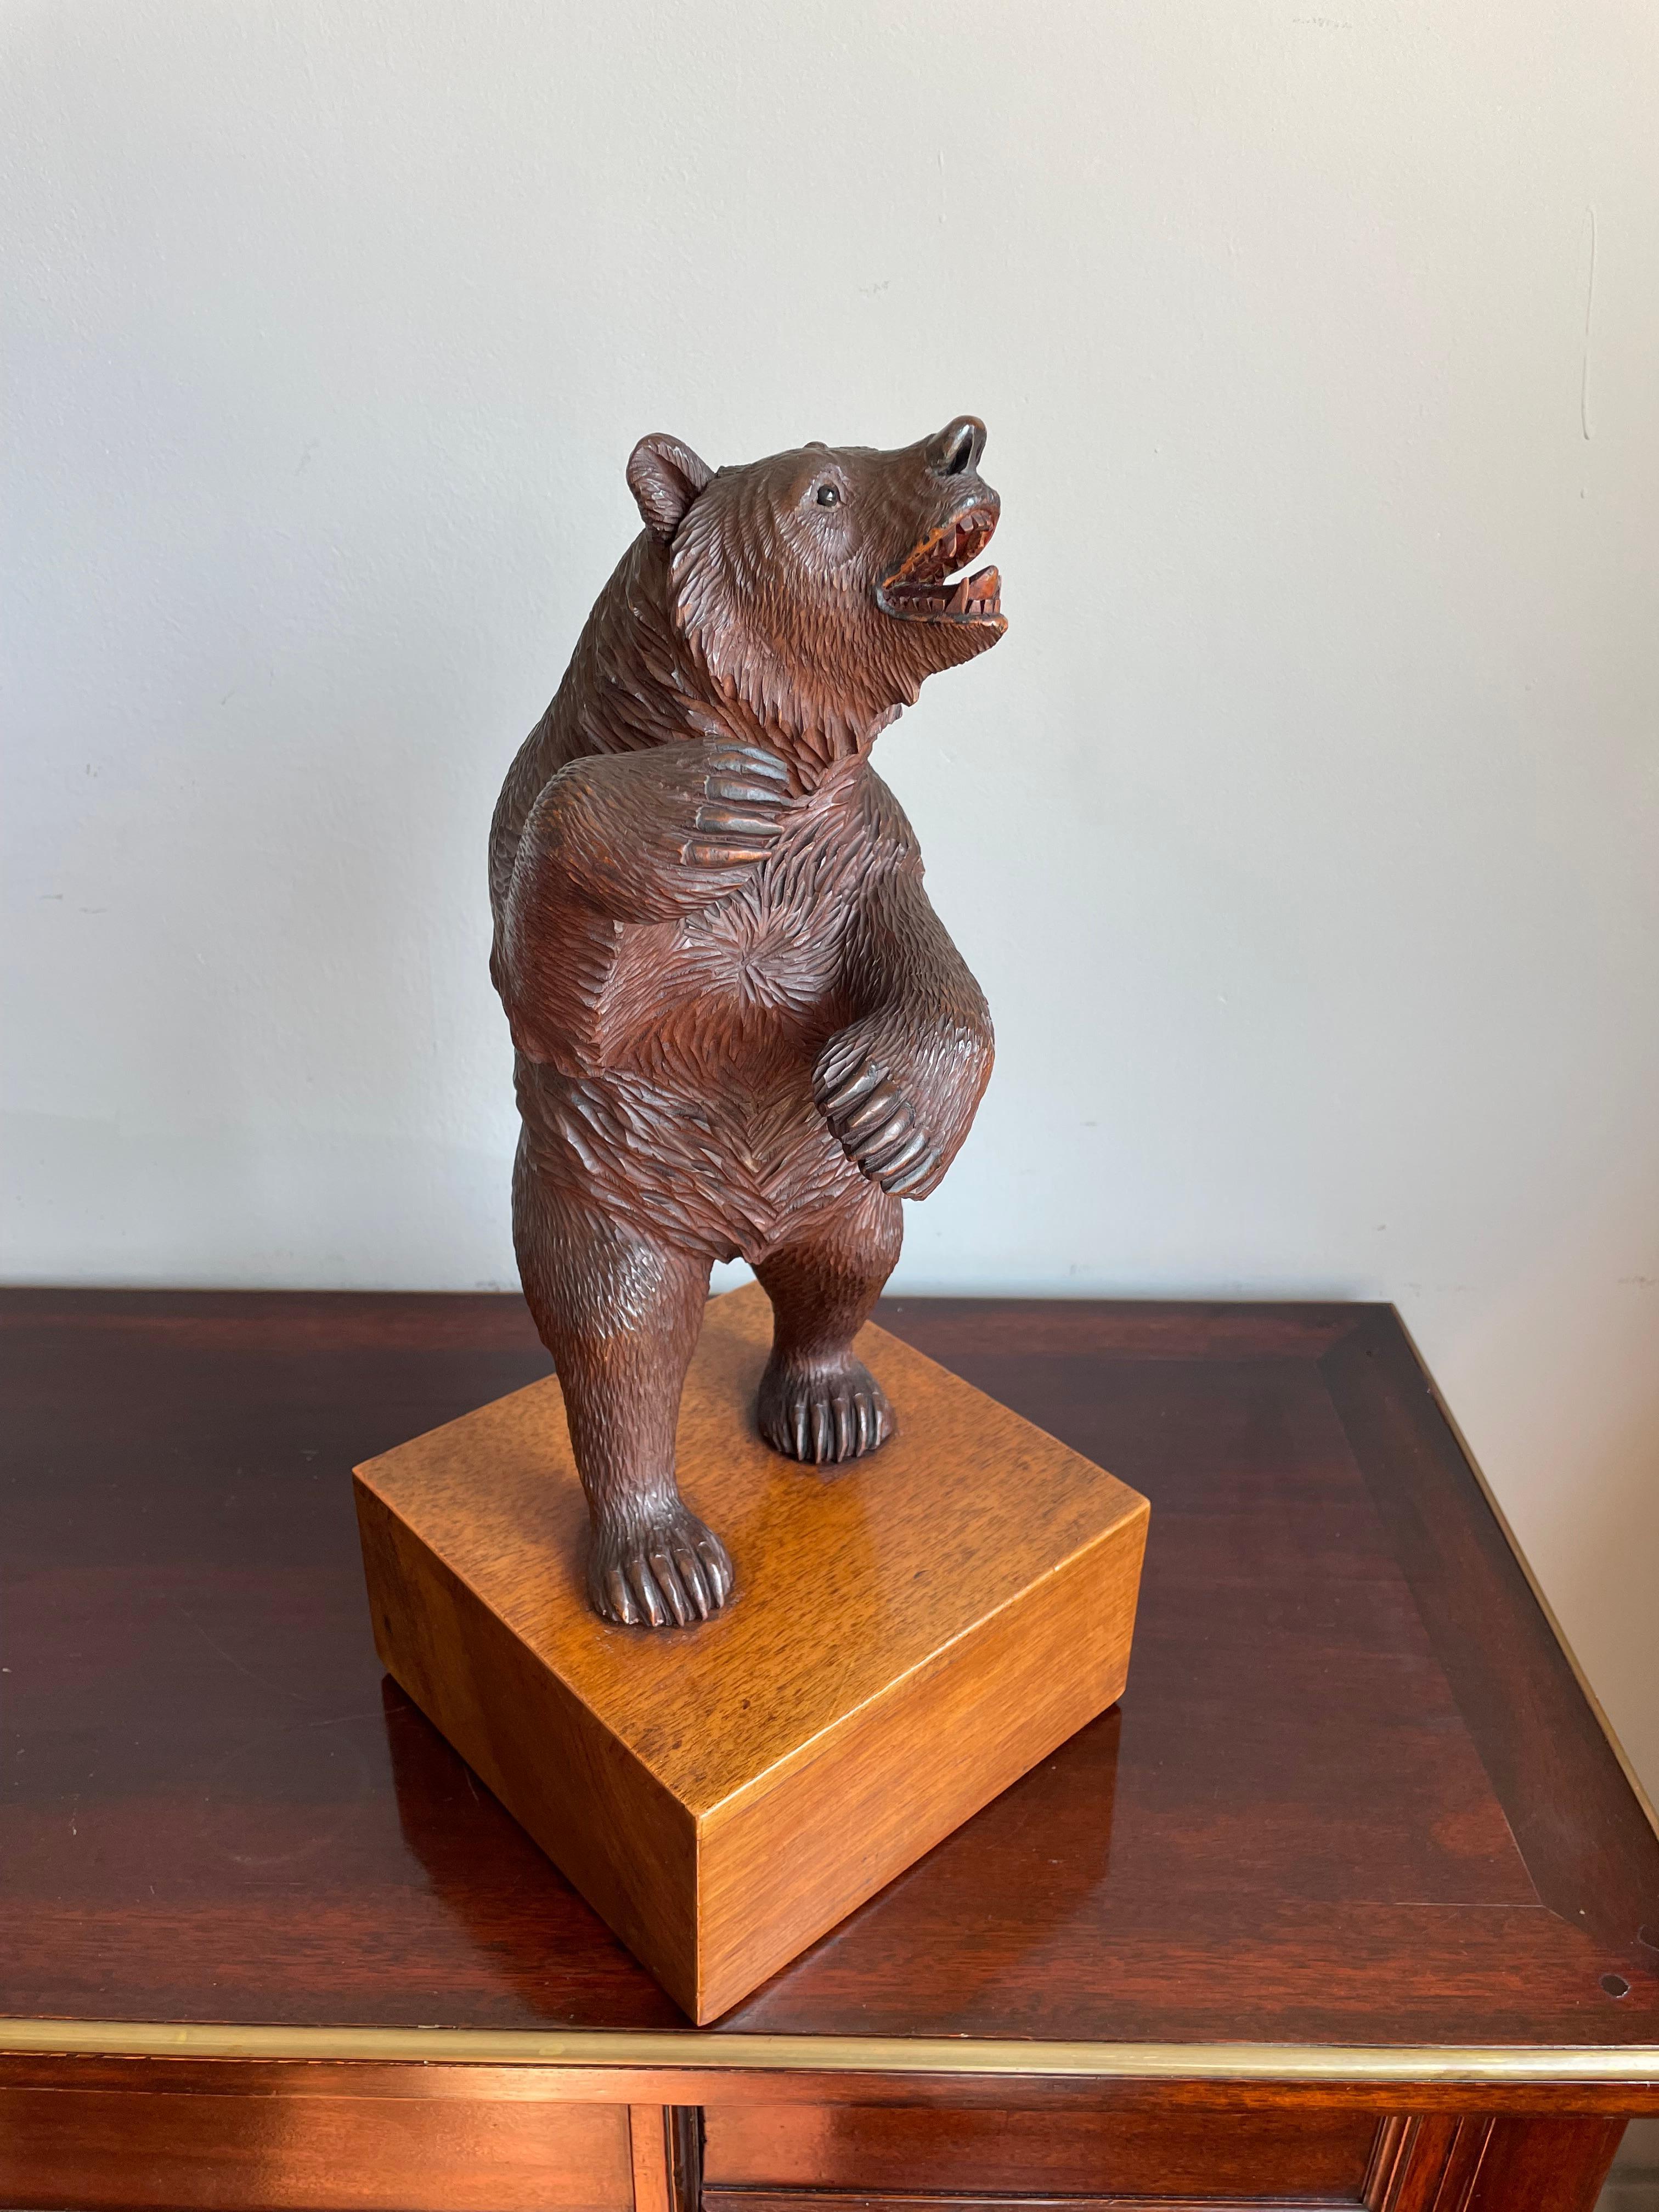 Sculpture d'ours ancienne sur une base en bois de noyer, d'une qualité de fabrication incroyable.

La plupart des gens sur terre n'ont pas une très bonne idée de qui ils sont, ni de ce qu'ils aiment et veulent vraiment. Cela se reflète souvent